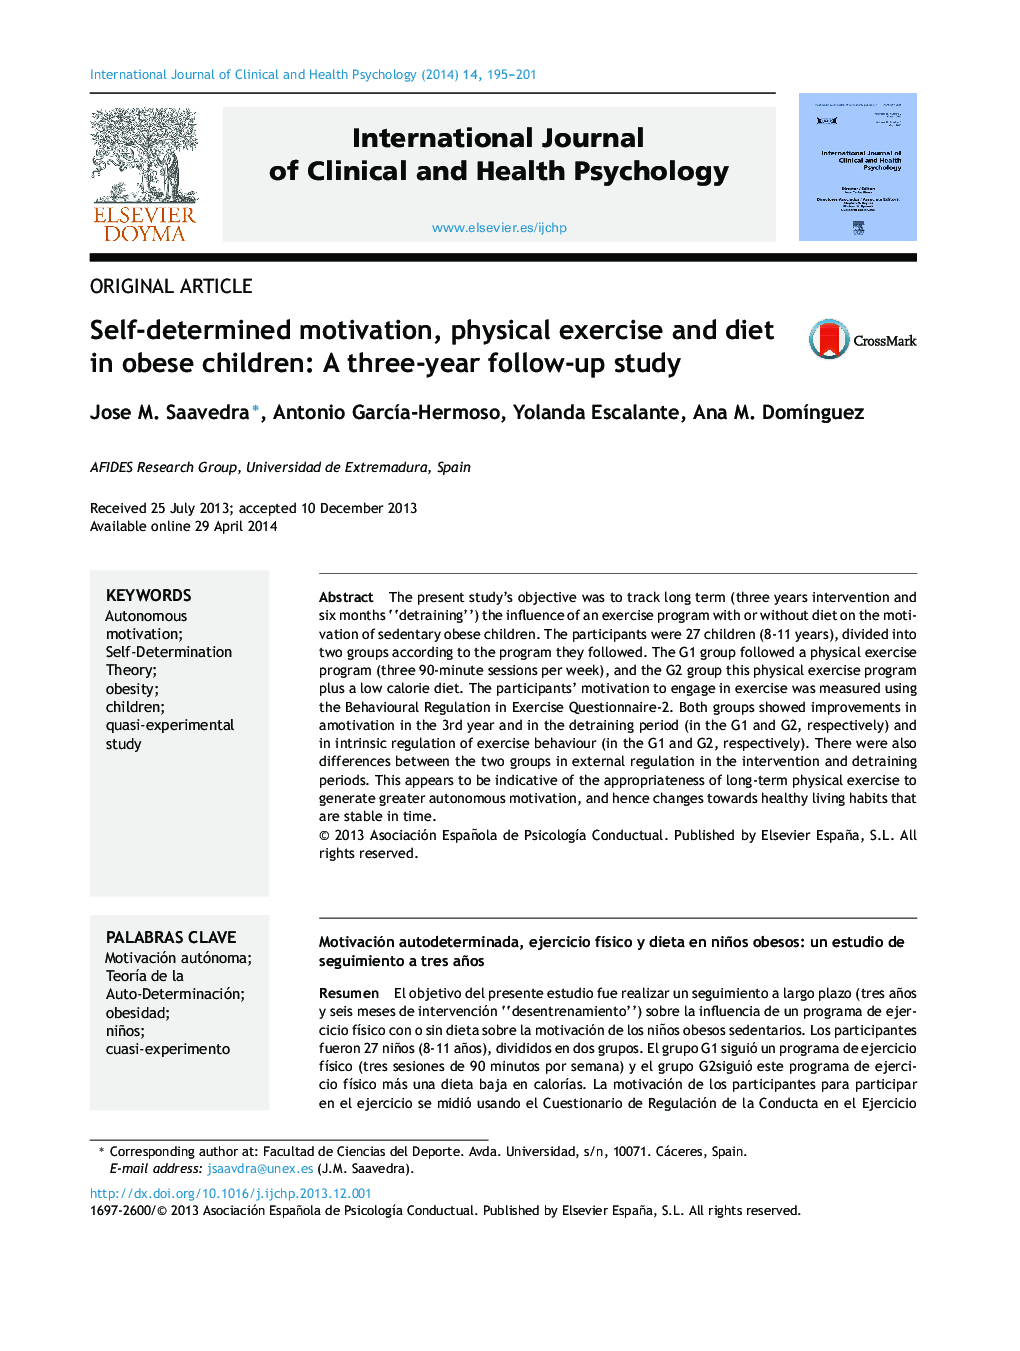 انگیزه، عزت نفس و رژیم غذایی در کودکان چاق: یک مطالعه پیگیری سه ساله 